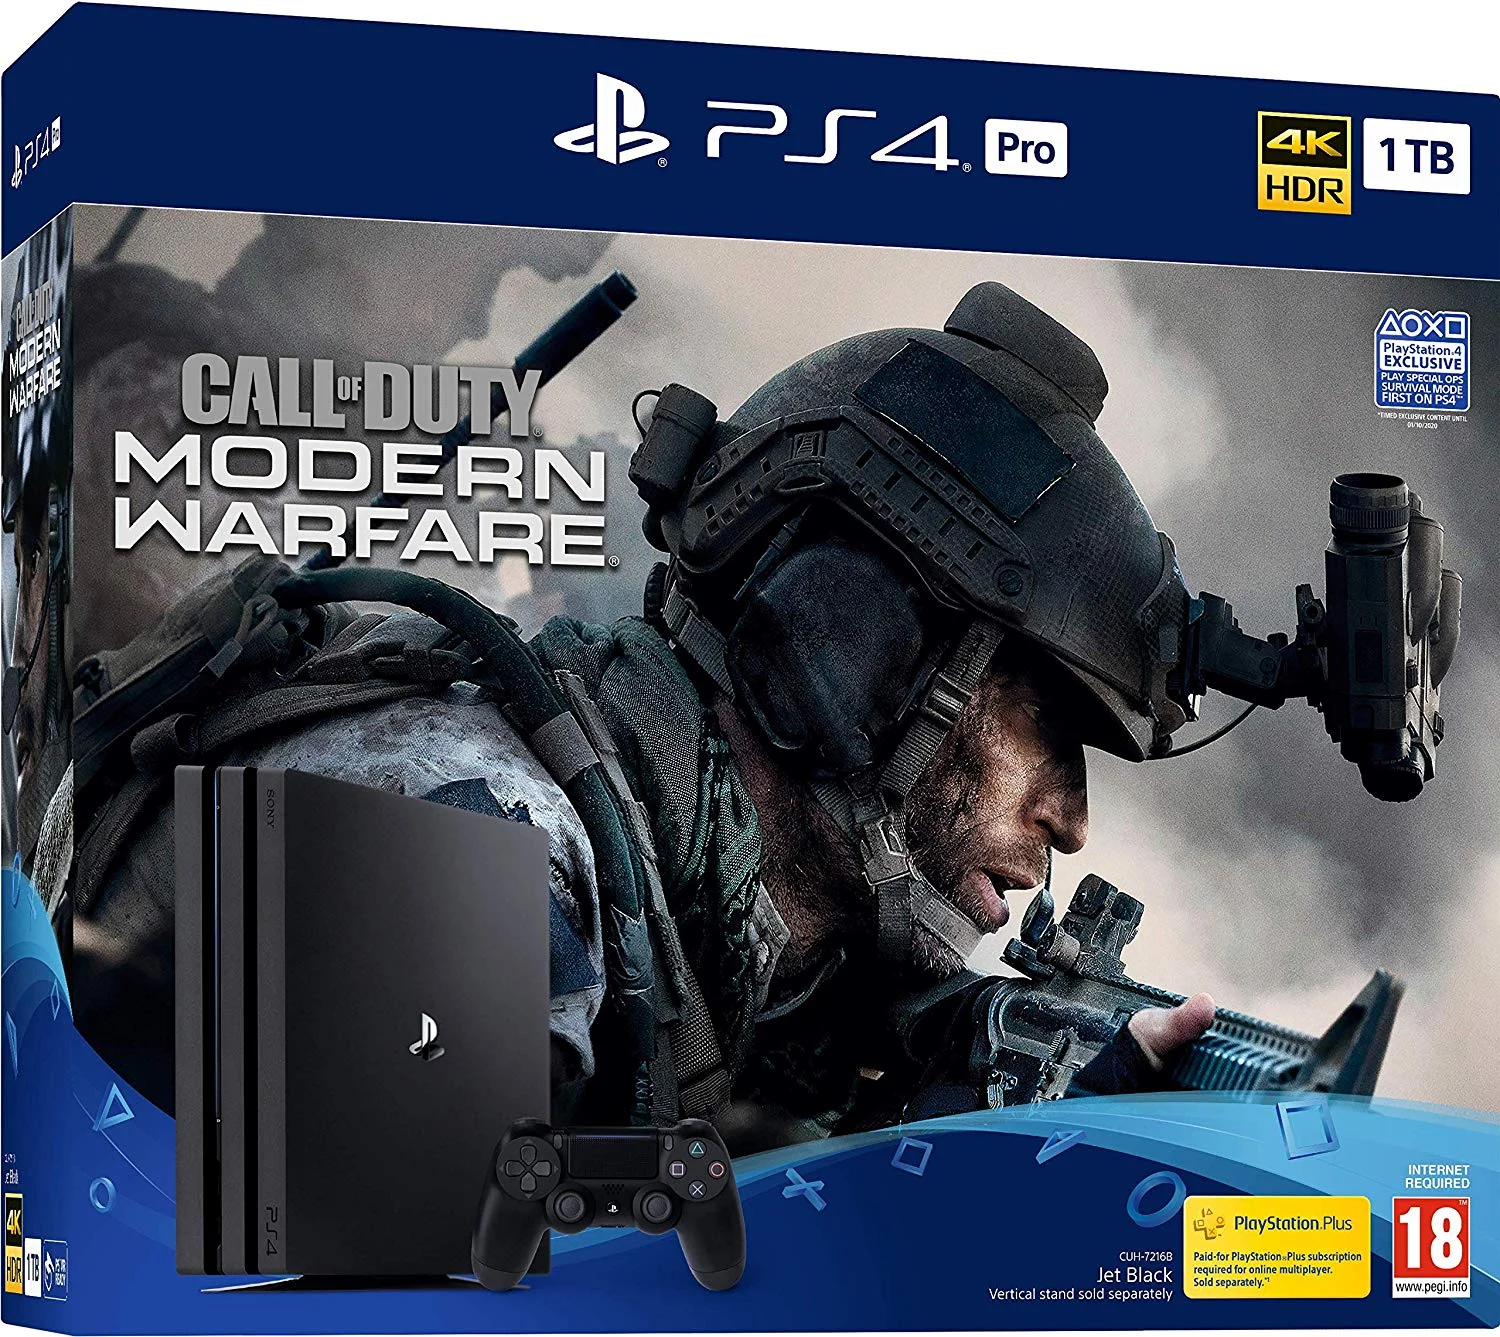  Sony PlayStation 4 Pro Call of Duty Modern Warfare Bundle